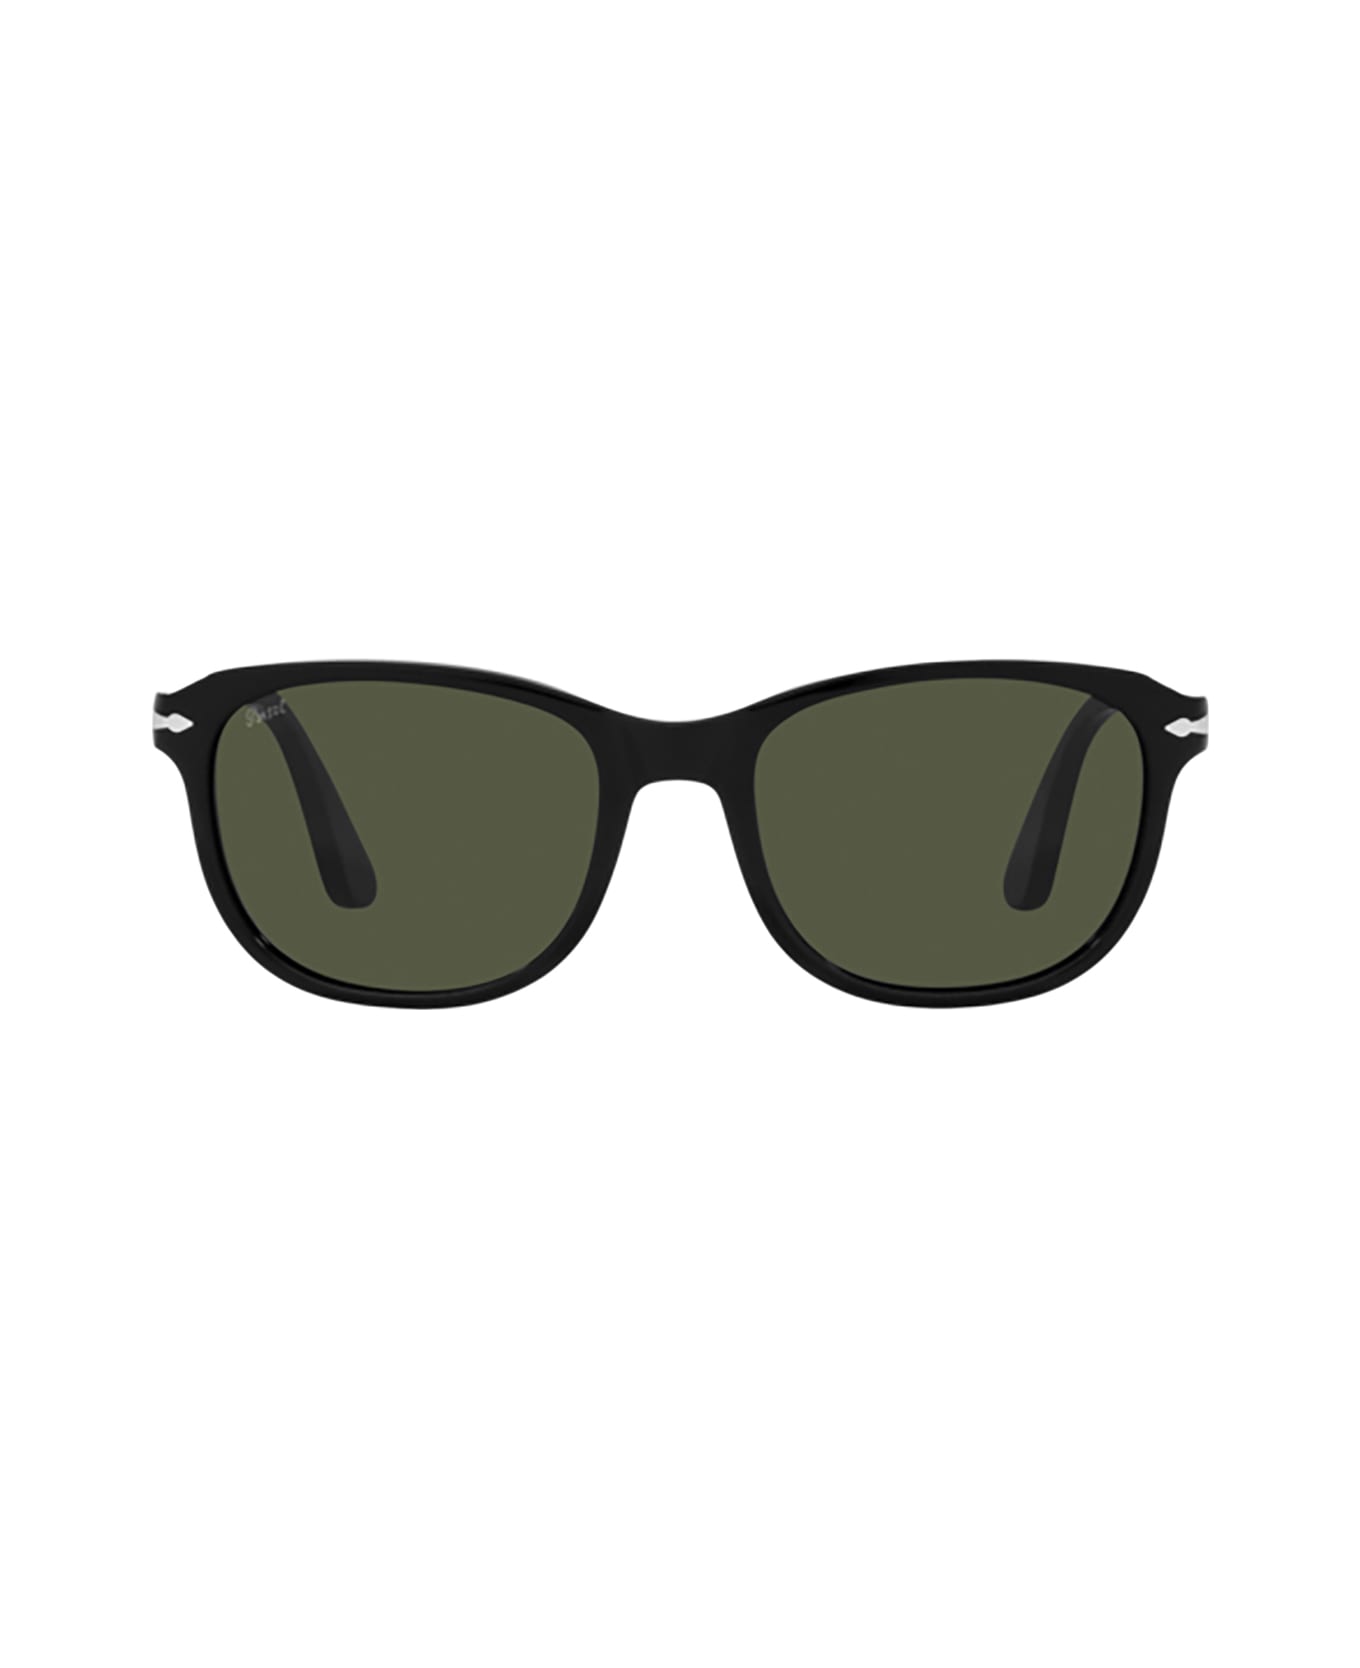 Persol Po1935s Black Sunglasses - Black